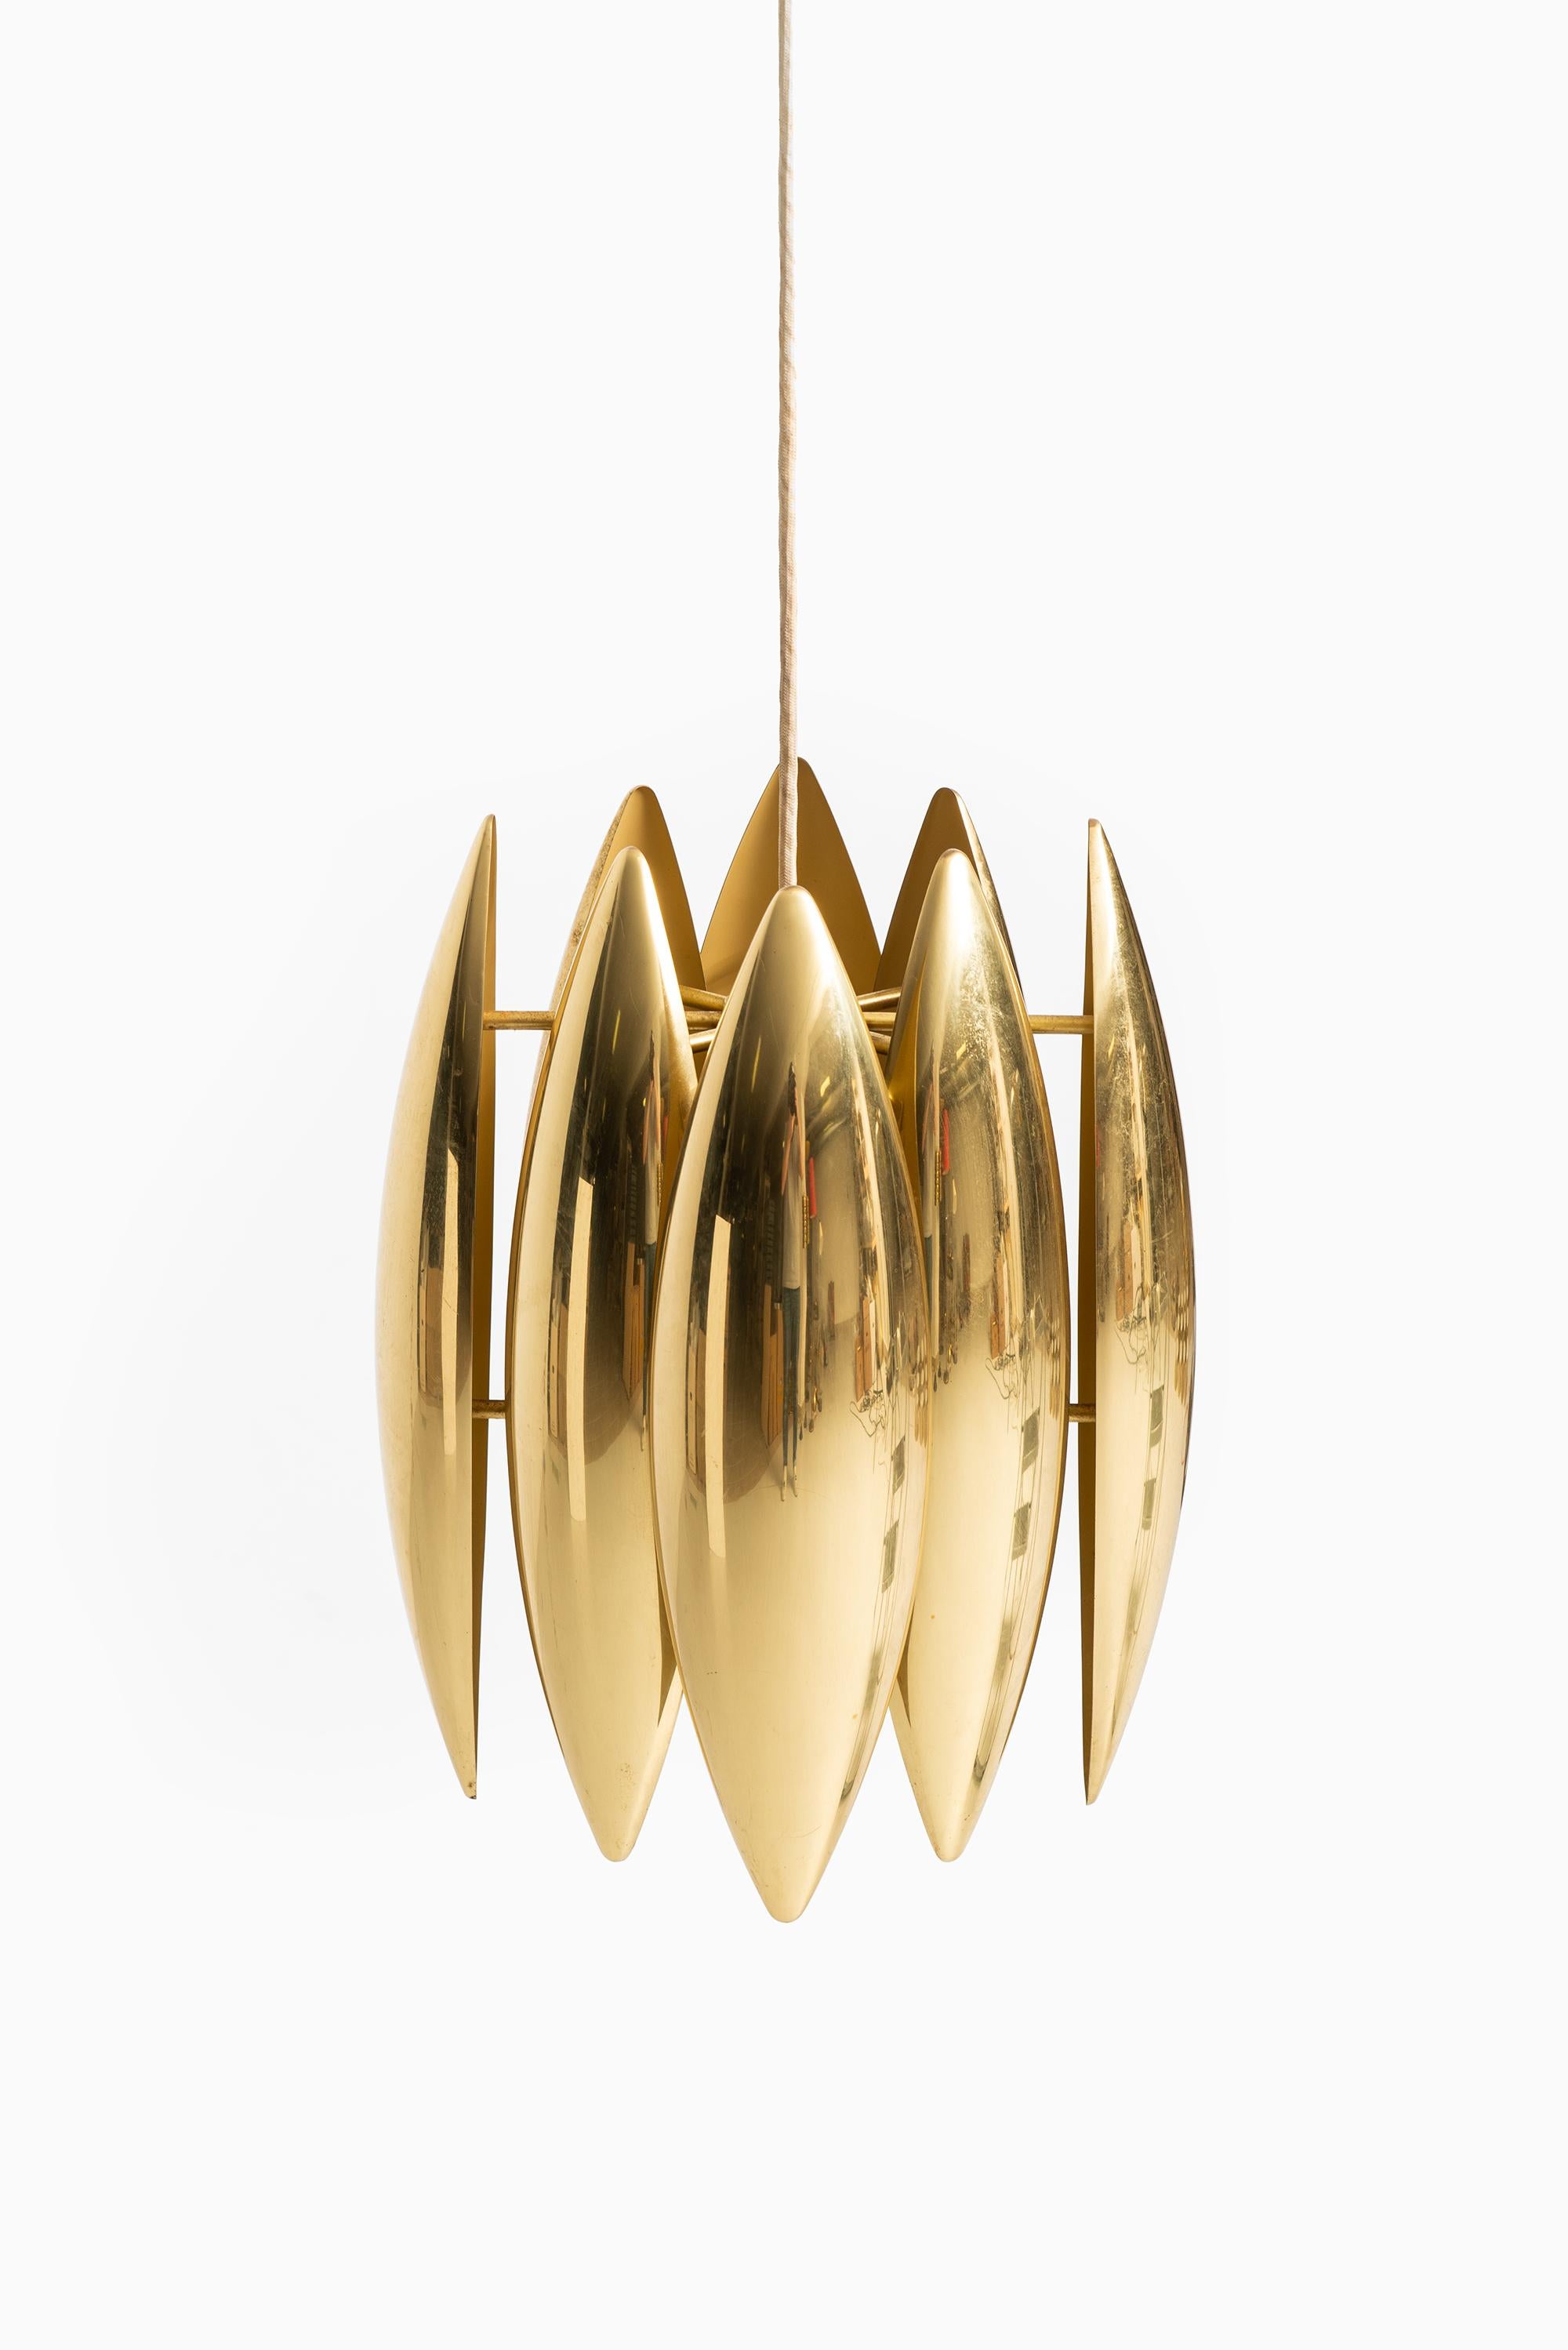 Rare ceiling lamp model Kastor designed by Jo Hammerborg. Produced by Fog & Mørup in Denmark.